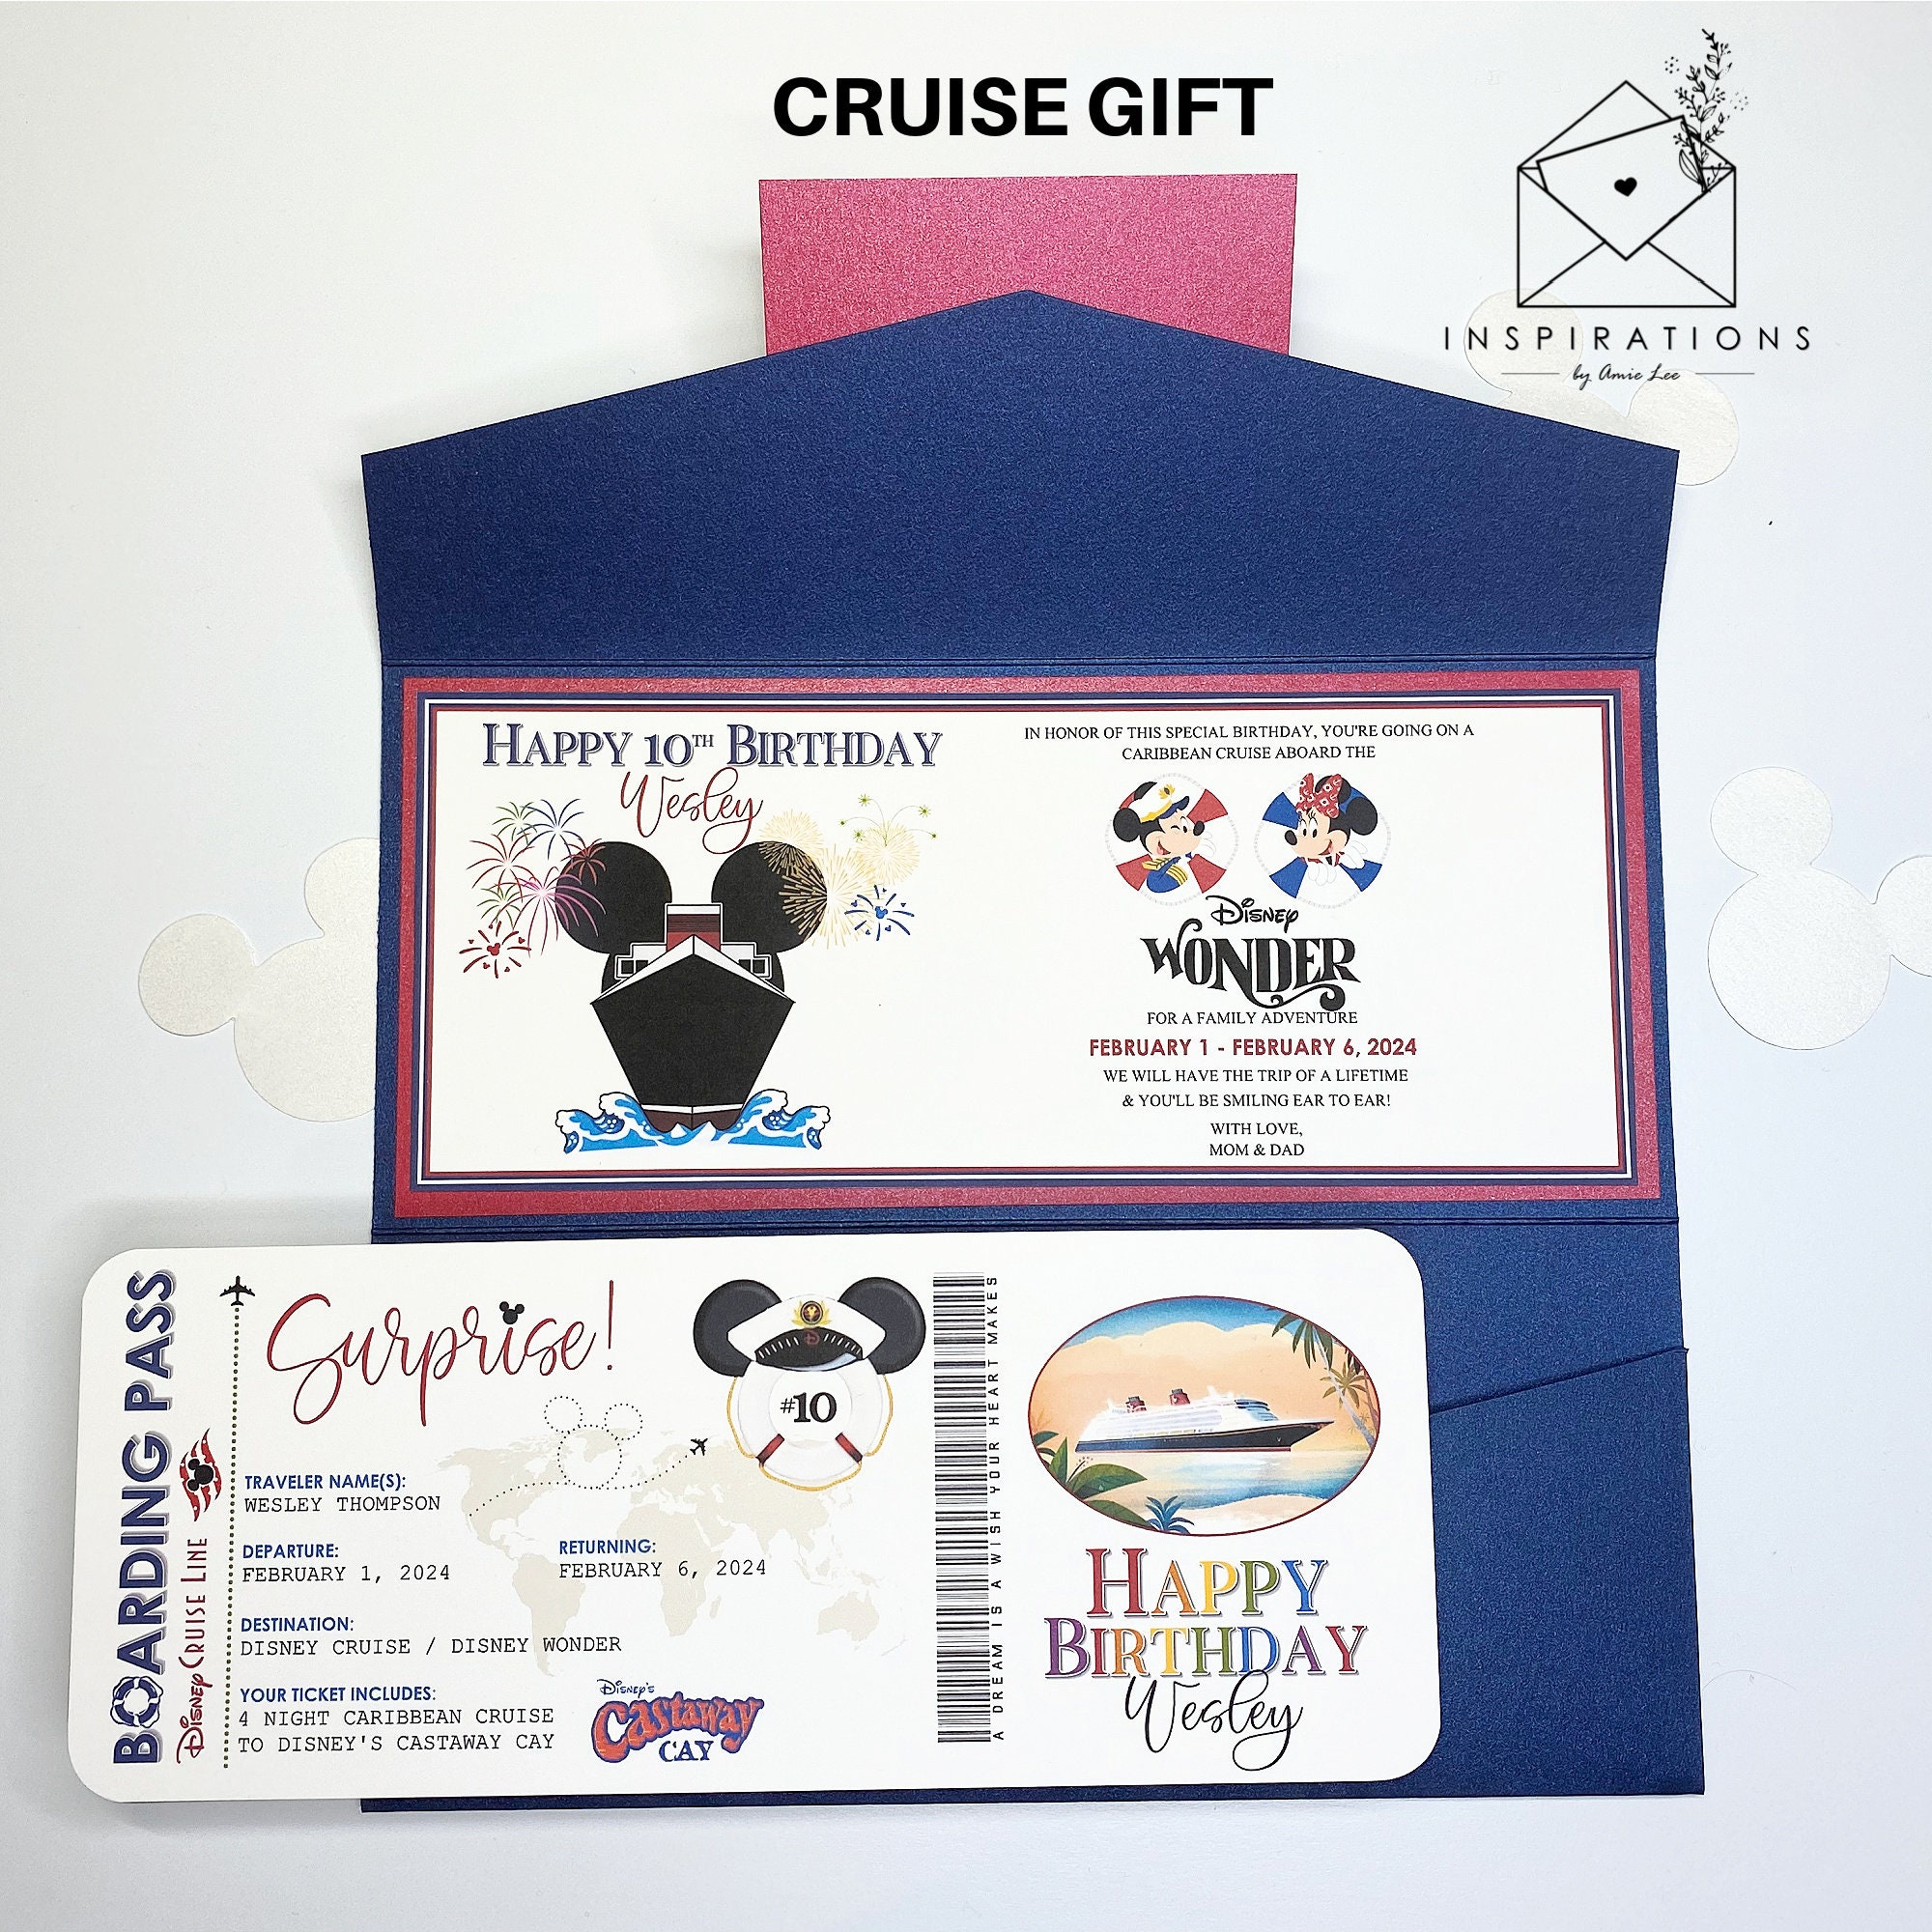 Obtenez une carte cadeau Disney lorsque vous réservez un séjour admissible  chez Voyage Enchanté - Voyage Enchanté - Destinations Disney